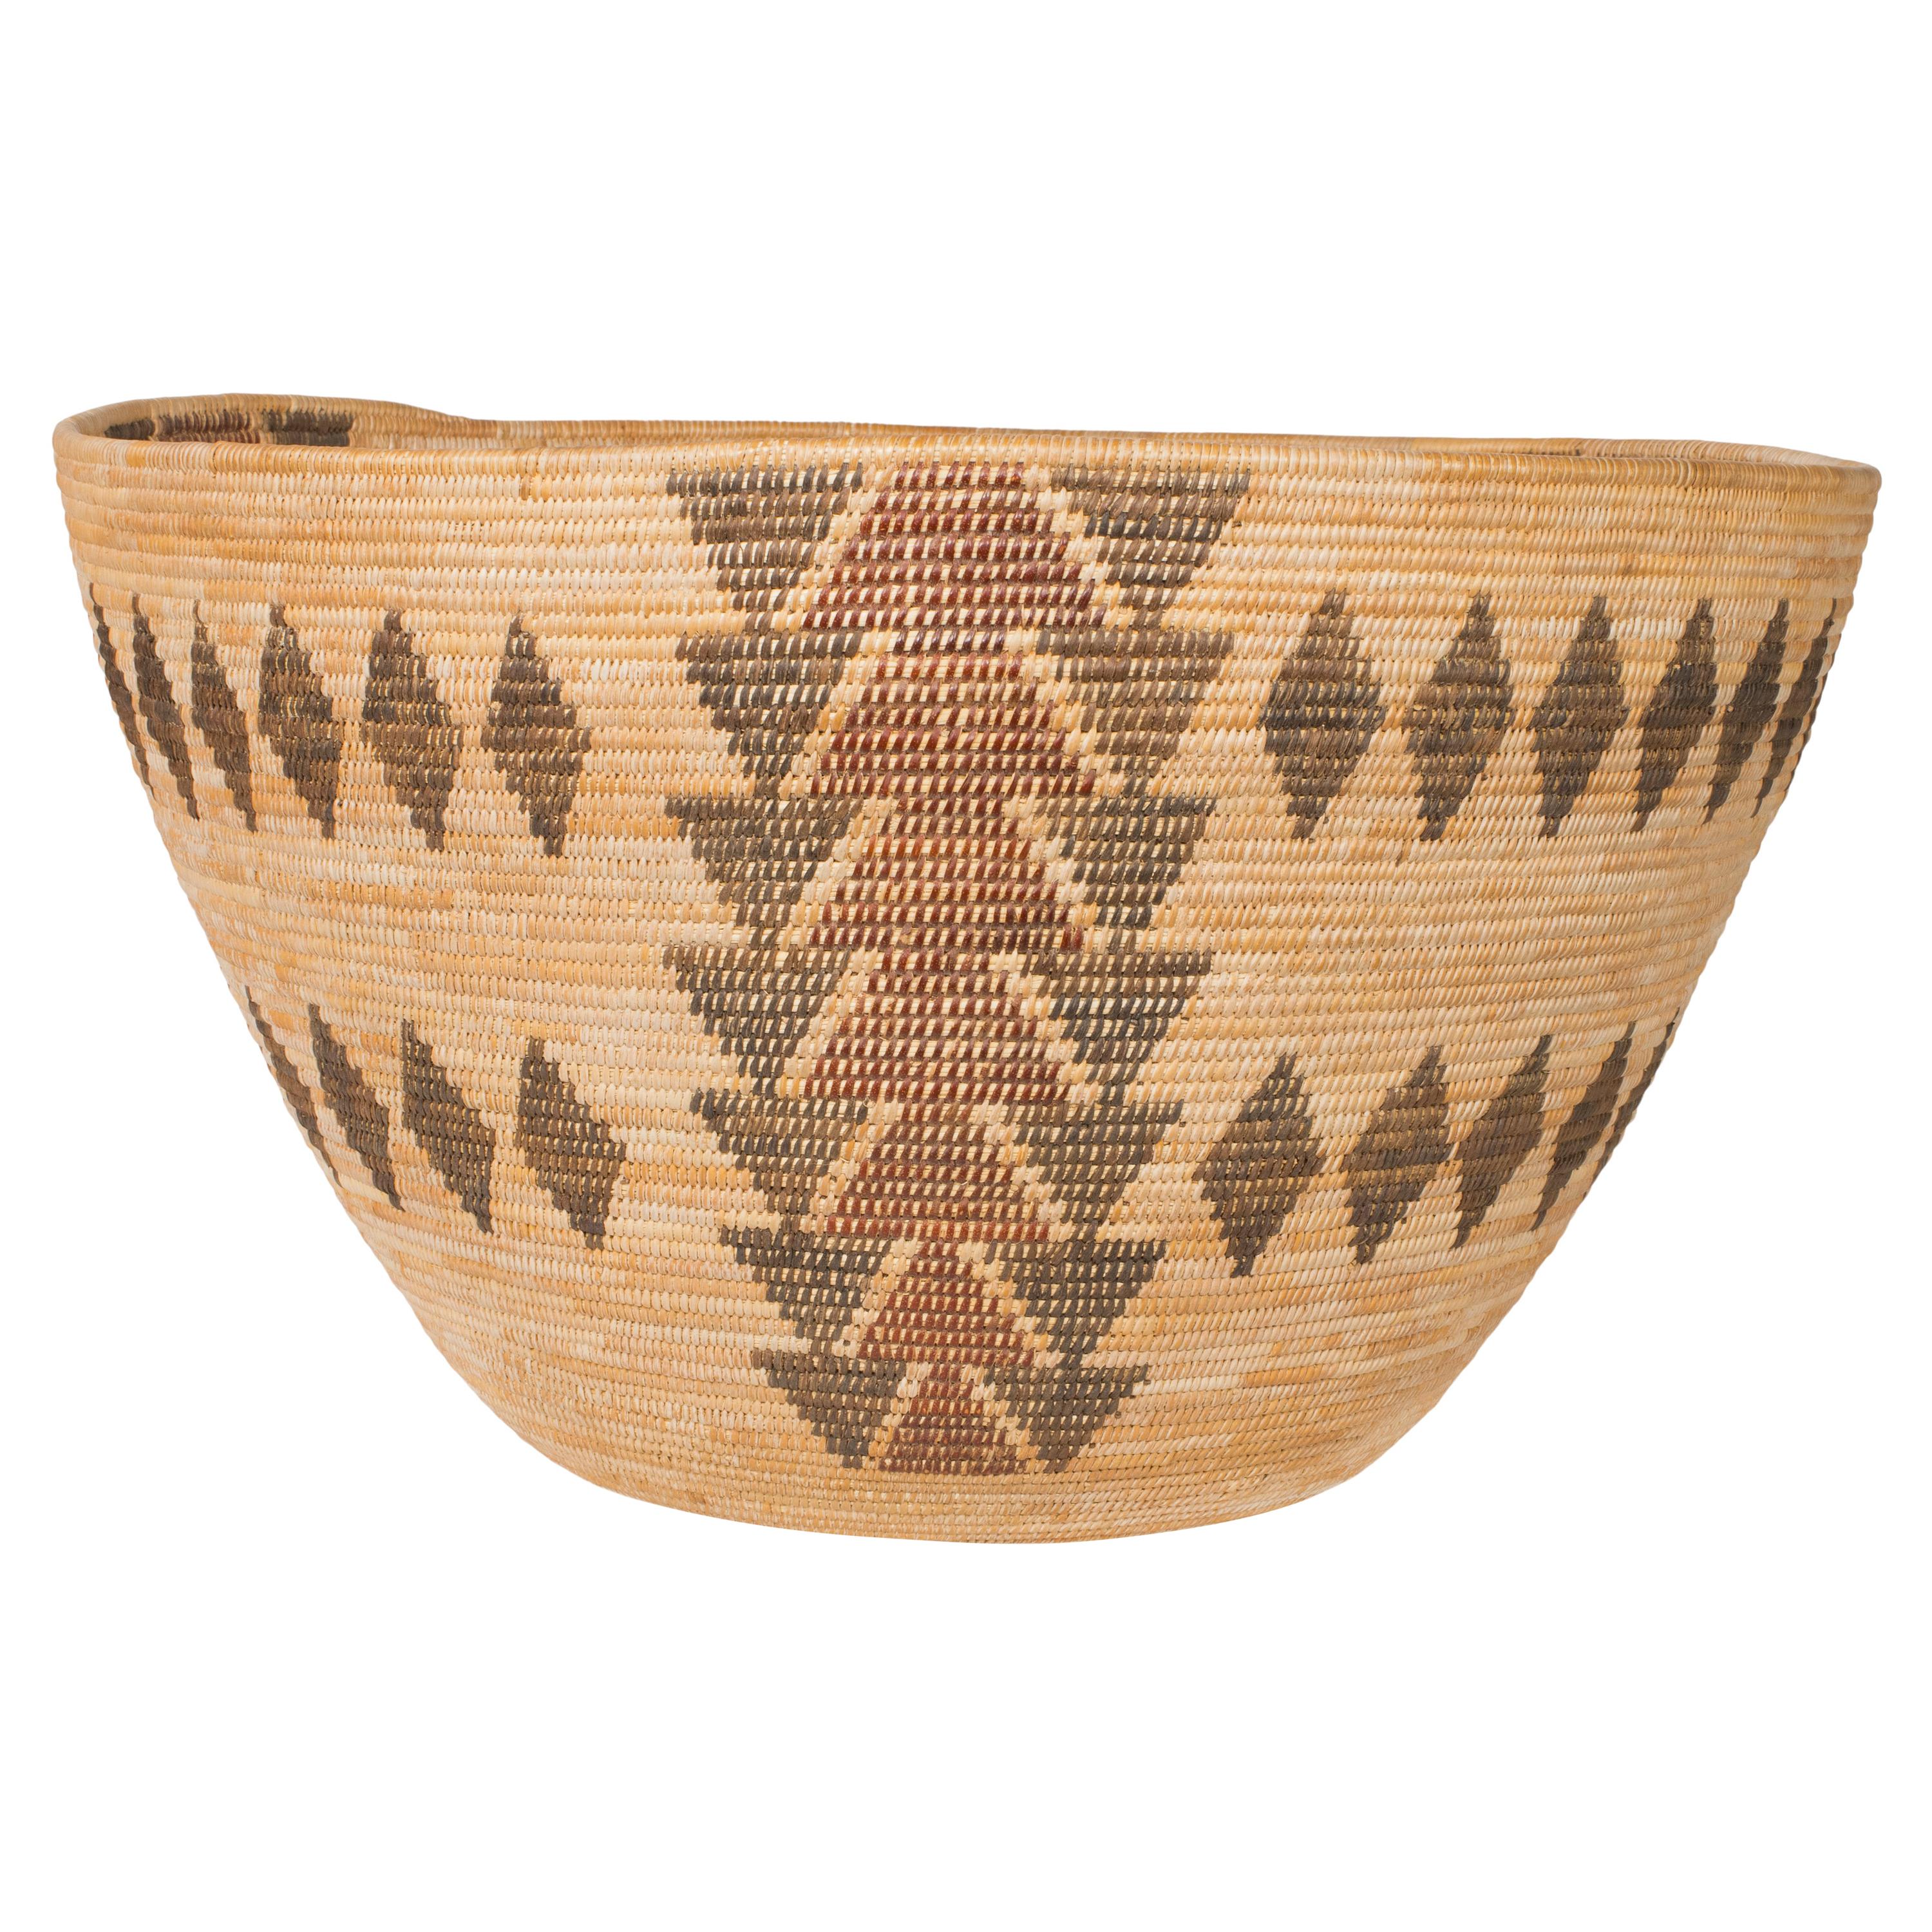 Circa 1900 Native American Yokut Polychrome Basket 